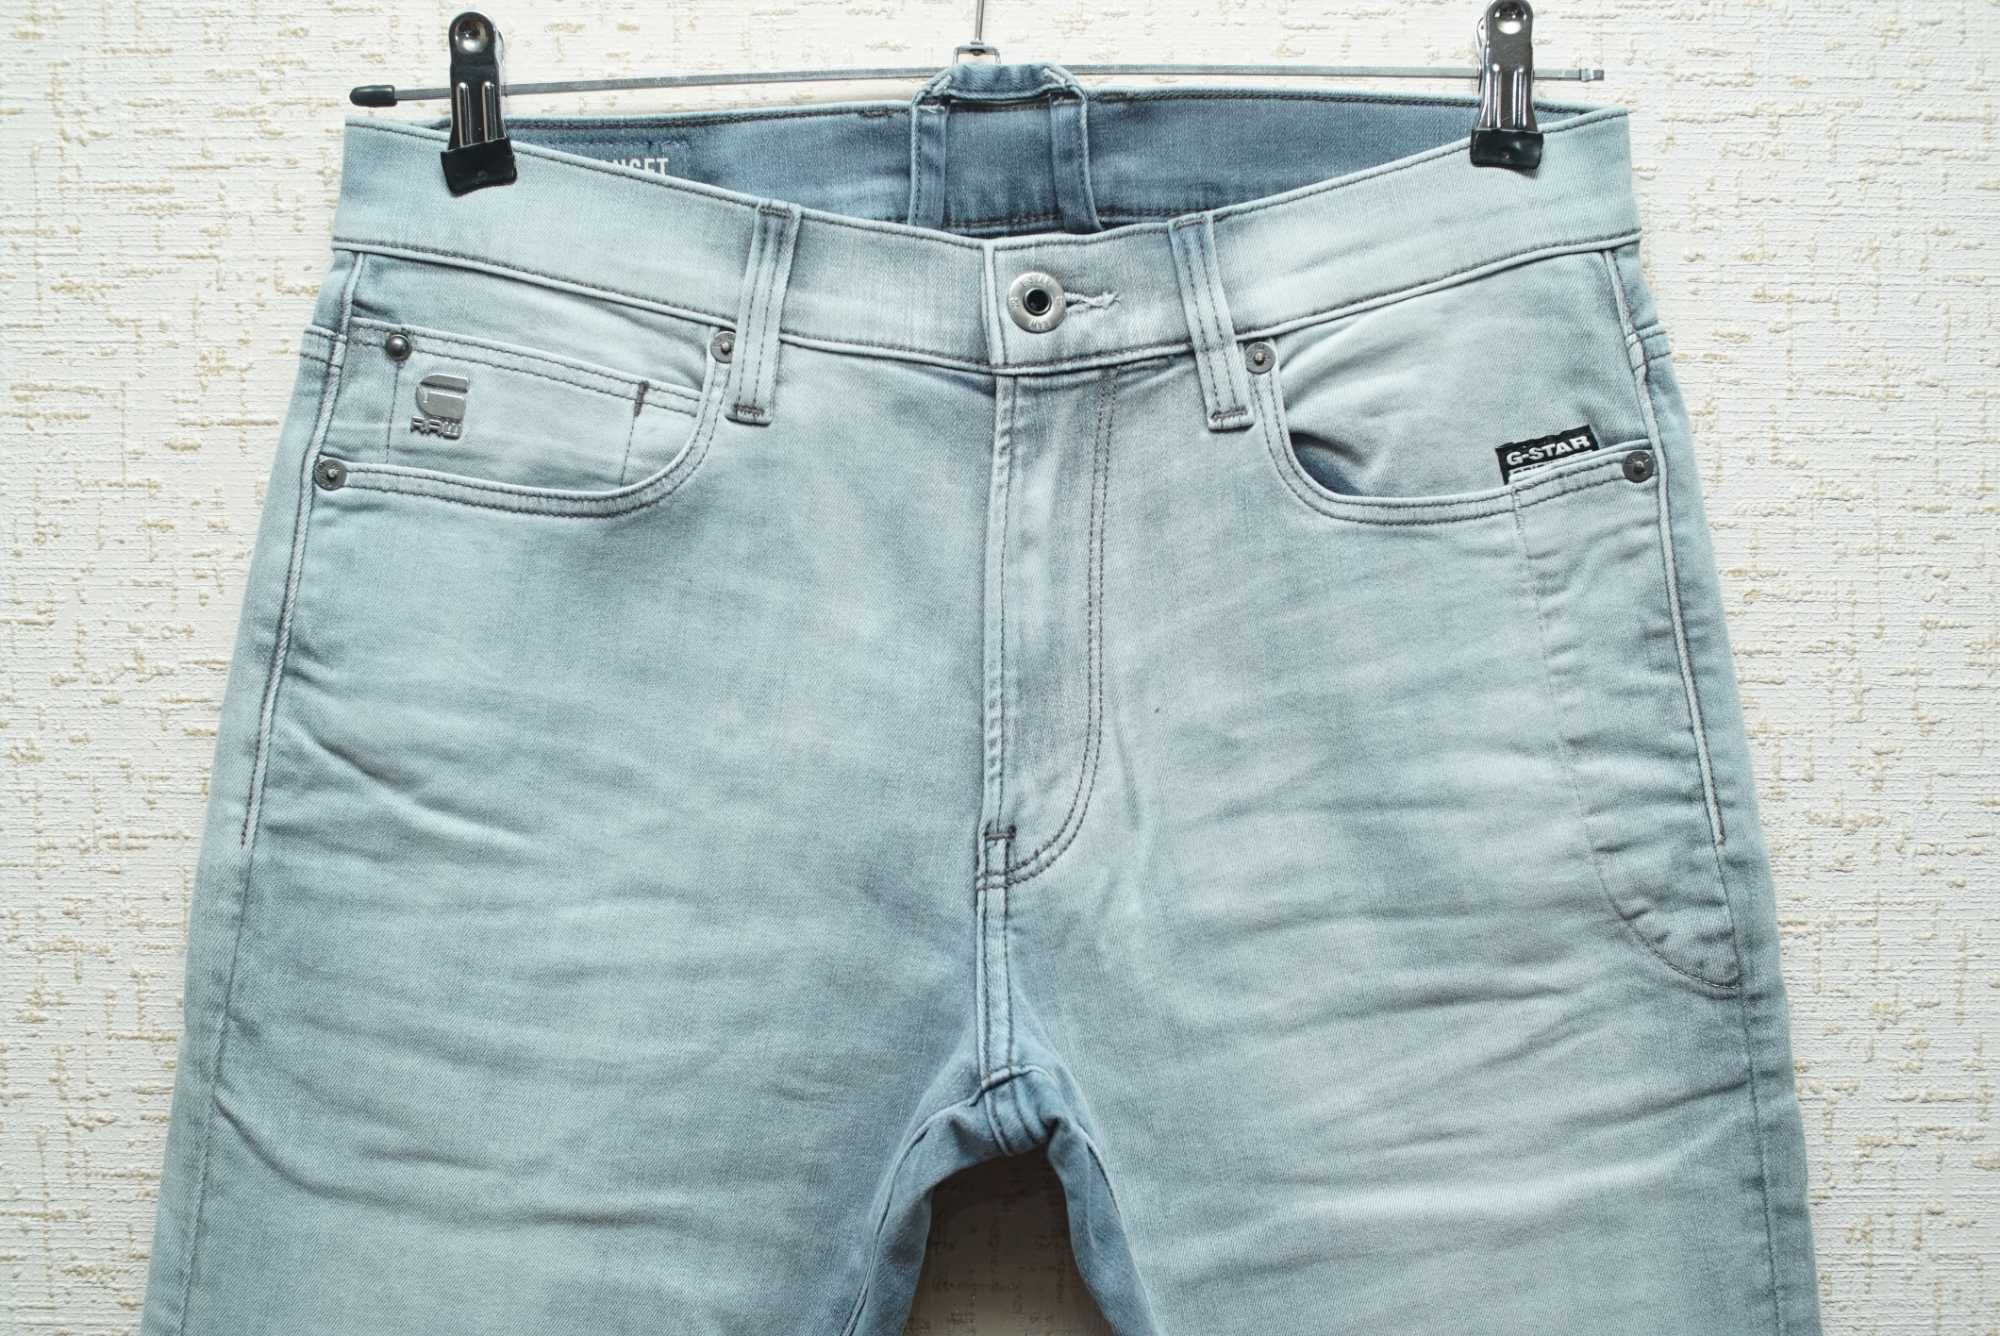 Мужские джинсы G-STAR RAW серо-голубого цвета (4101 Lancet skinny)